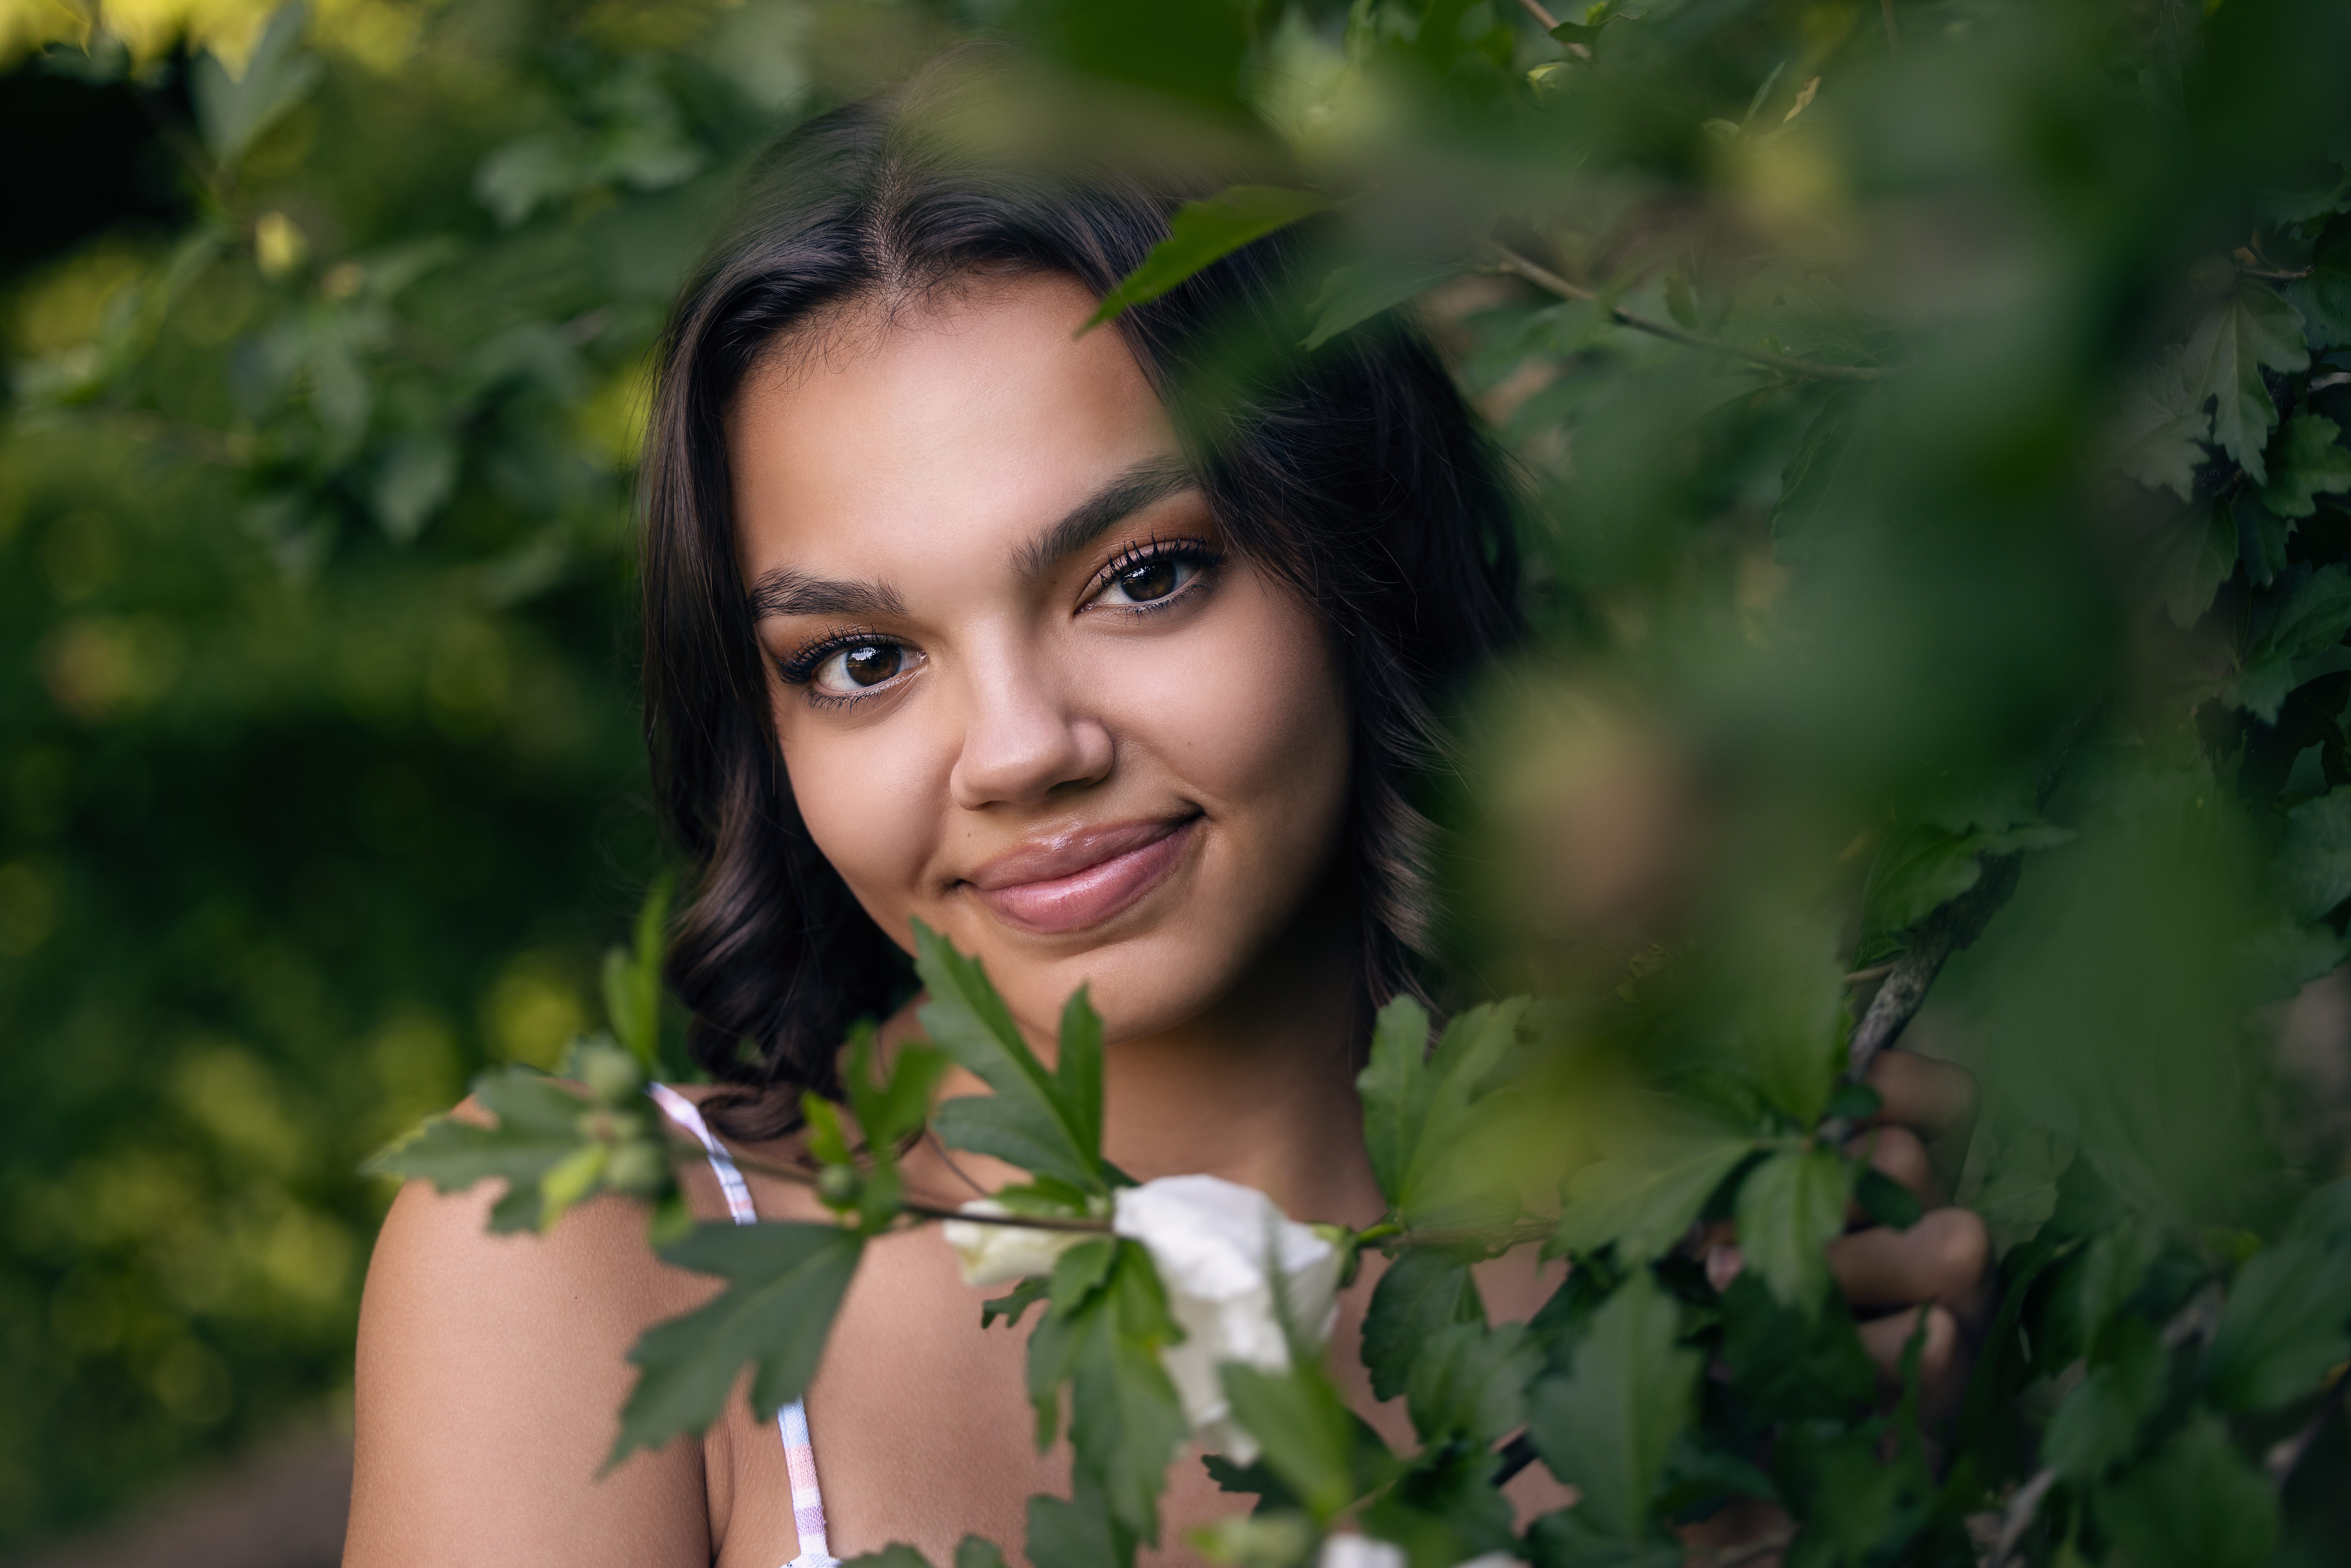 Teen girl among foliage